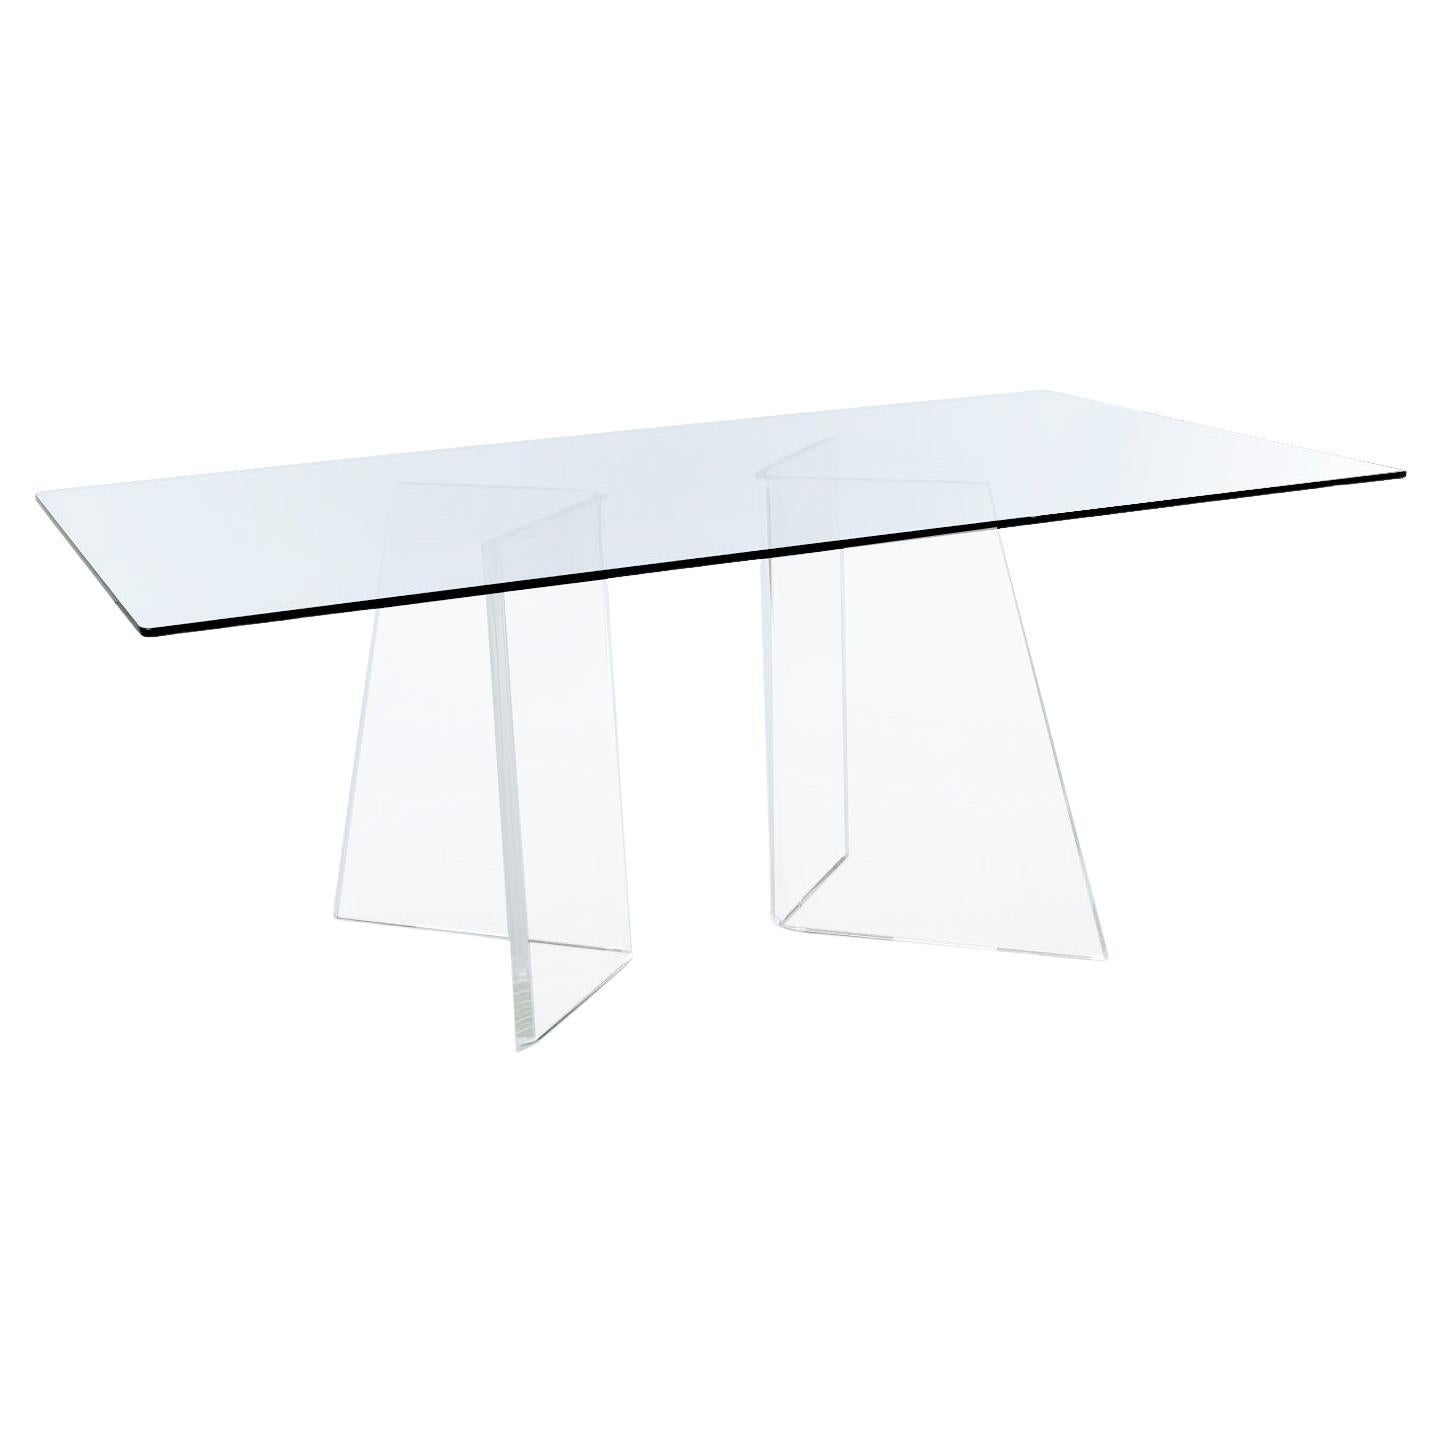 Cette magnifique table en Lucite des années 19-Laties est presque fantomatique, car son plateau en verre transparent et ses piédestaux en acrylique semblent disparaître dans le champ de vision. Les deux piédestaux épais en Lucite sont des coins